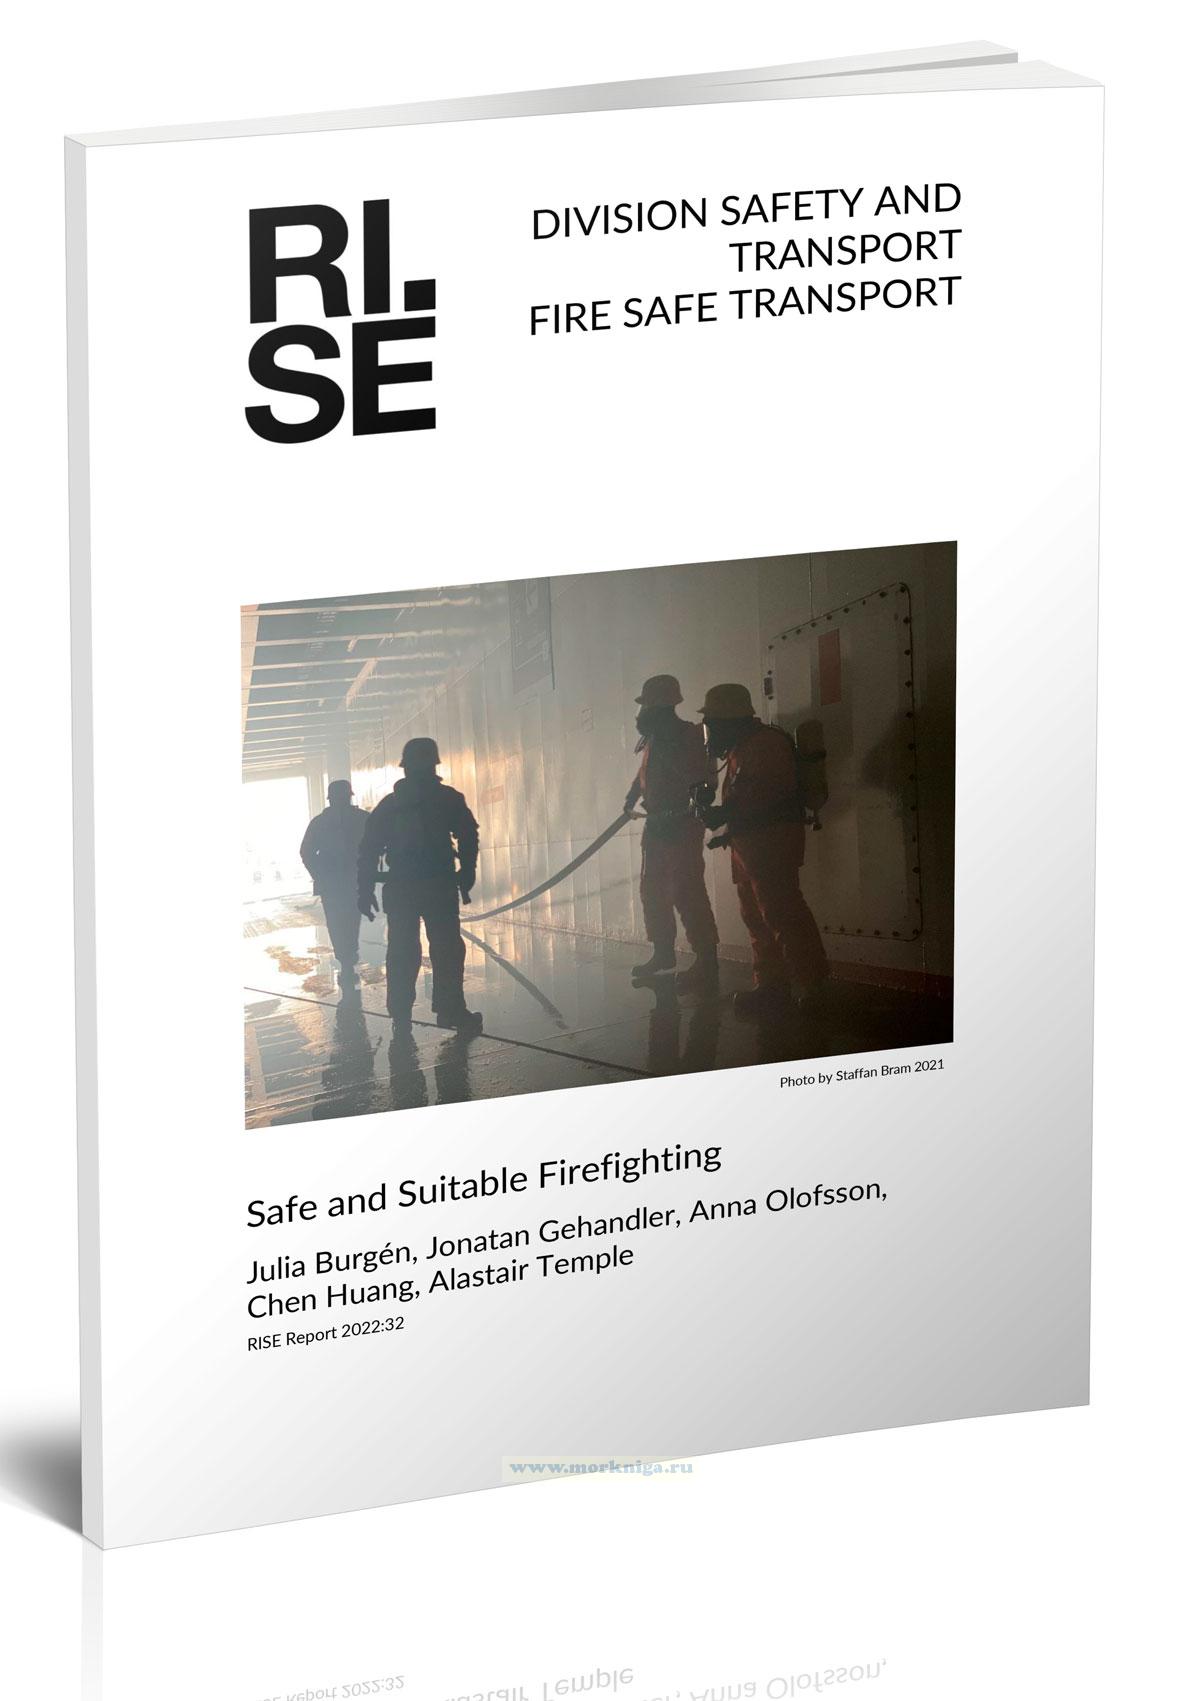 Safe and suitable firefighting/Пожаротушение: безопасное и практичное